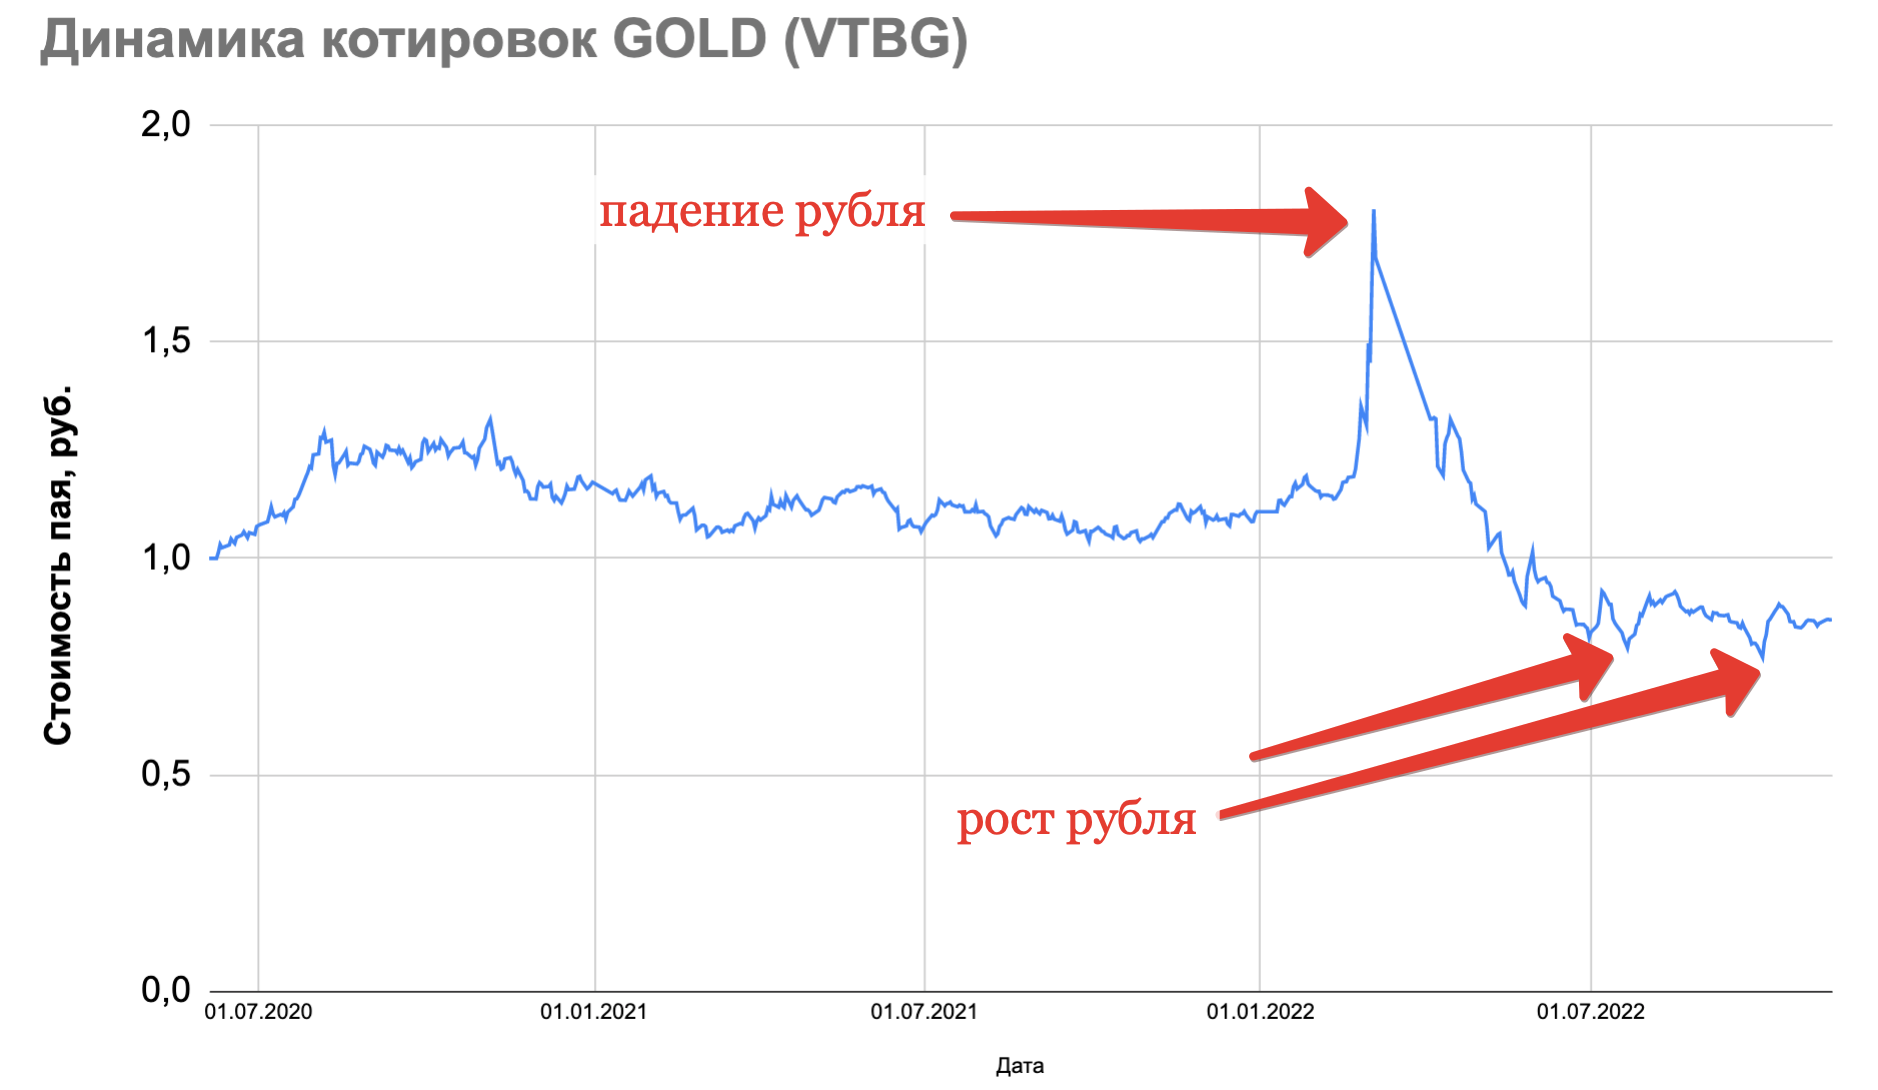 Фонд акций ВТБ. Символ золота на бирже. Биржевое золото с 2014 года в рублях. Цена золота на бирже.